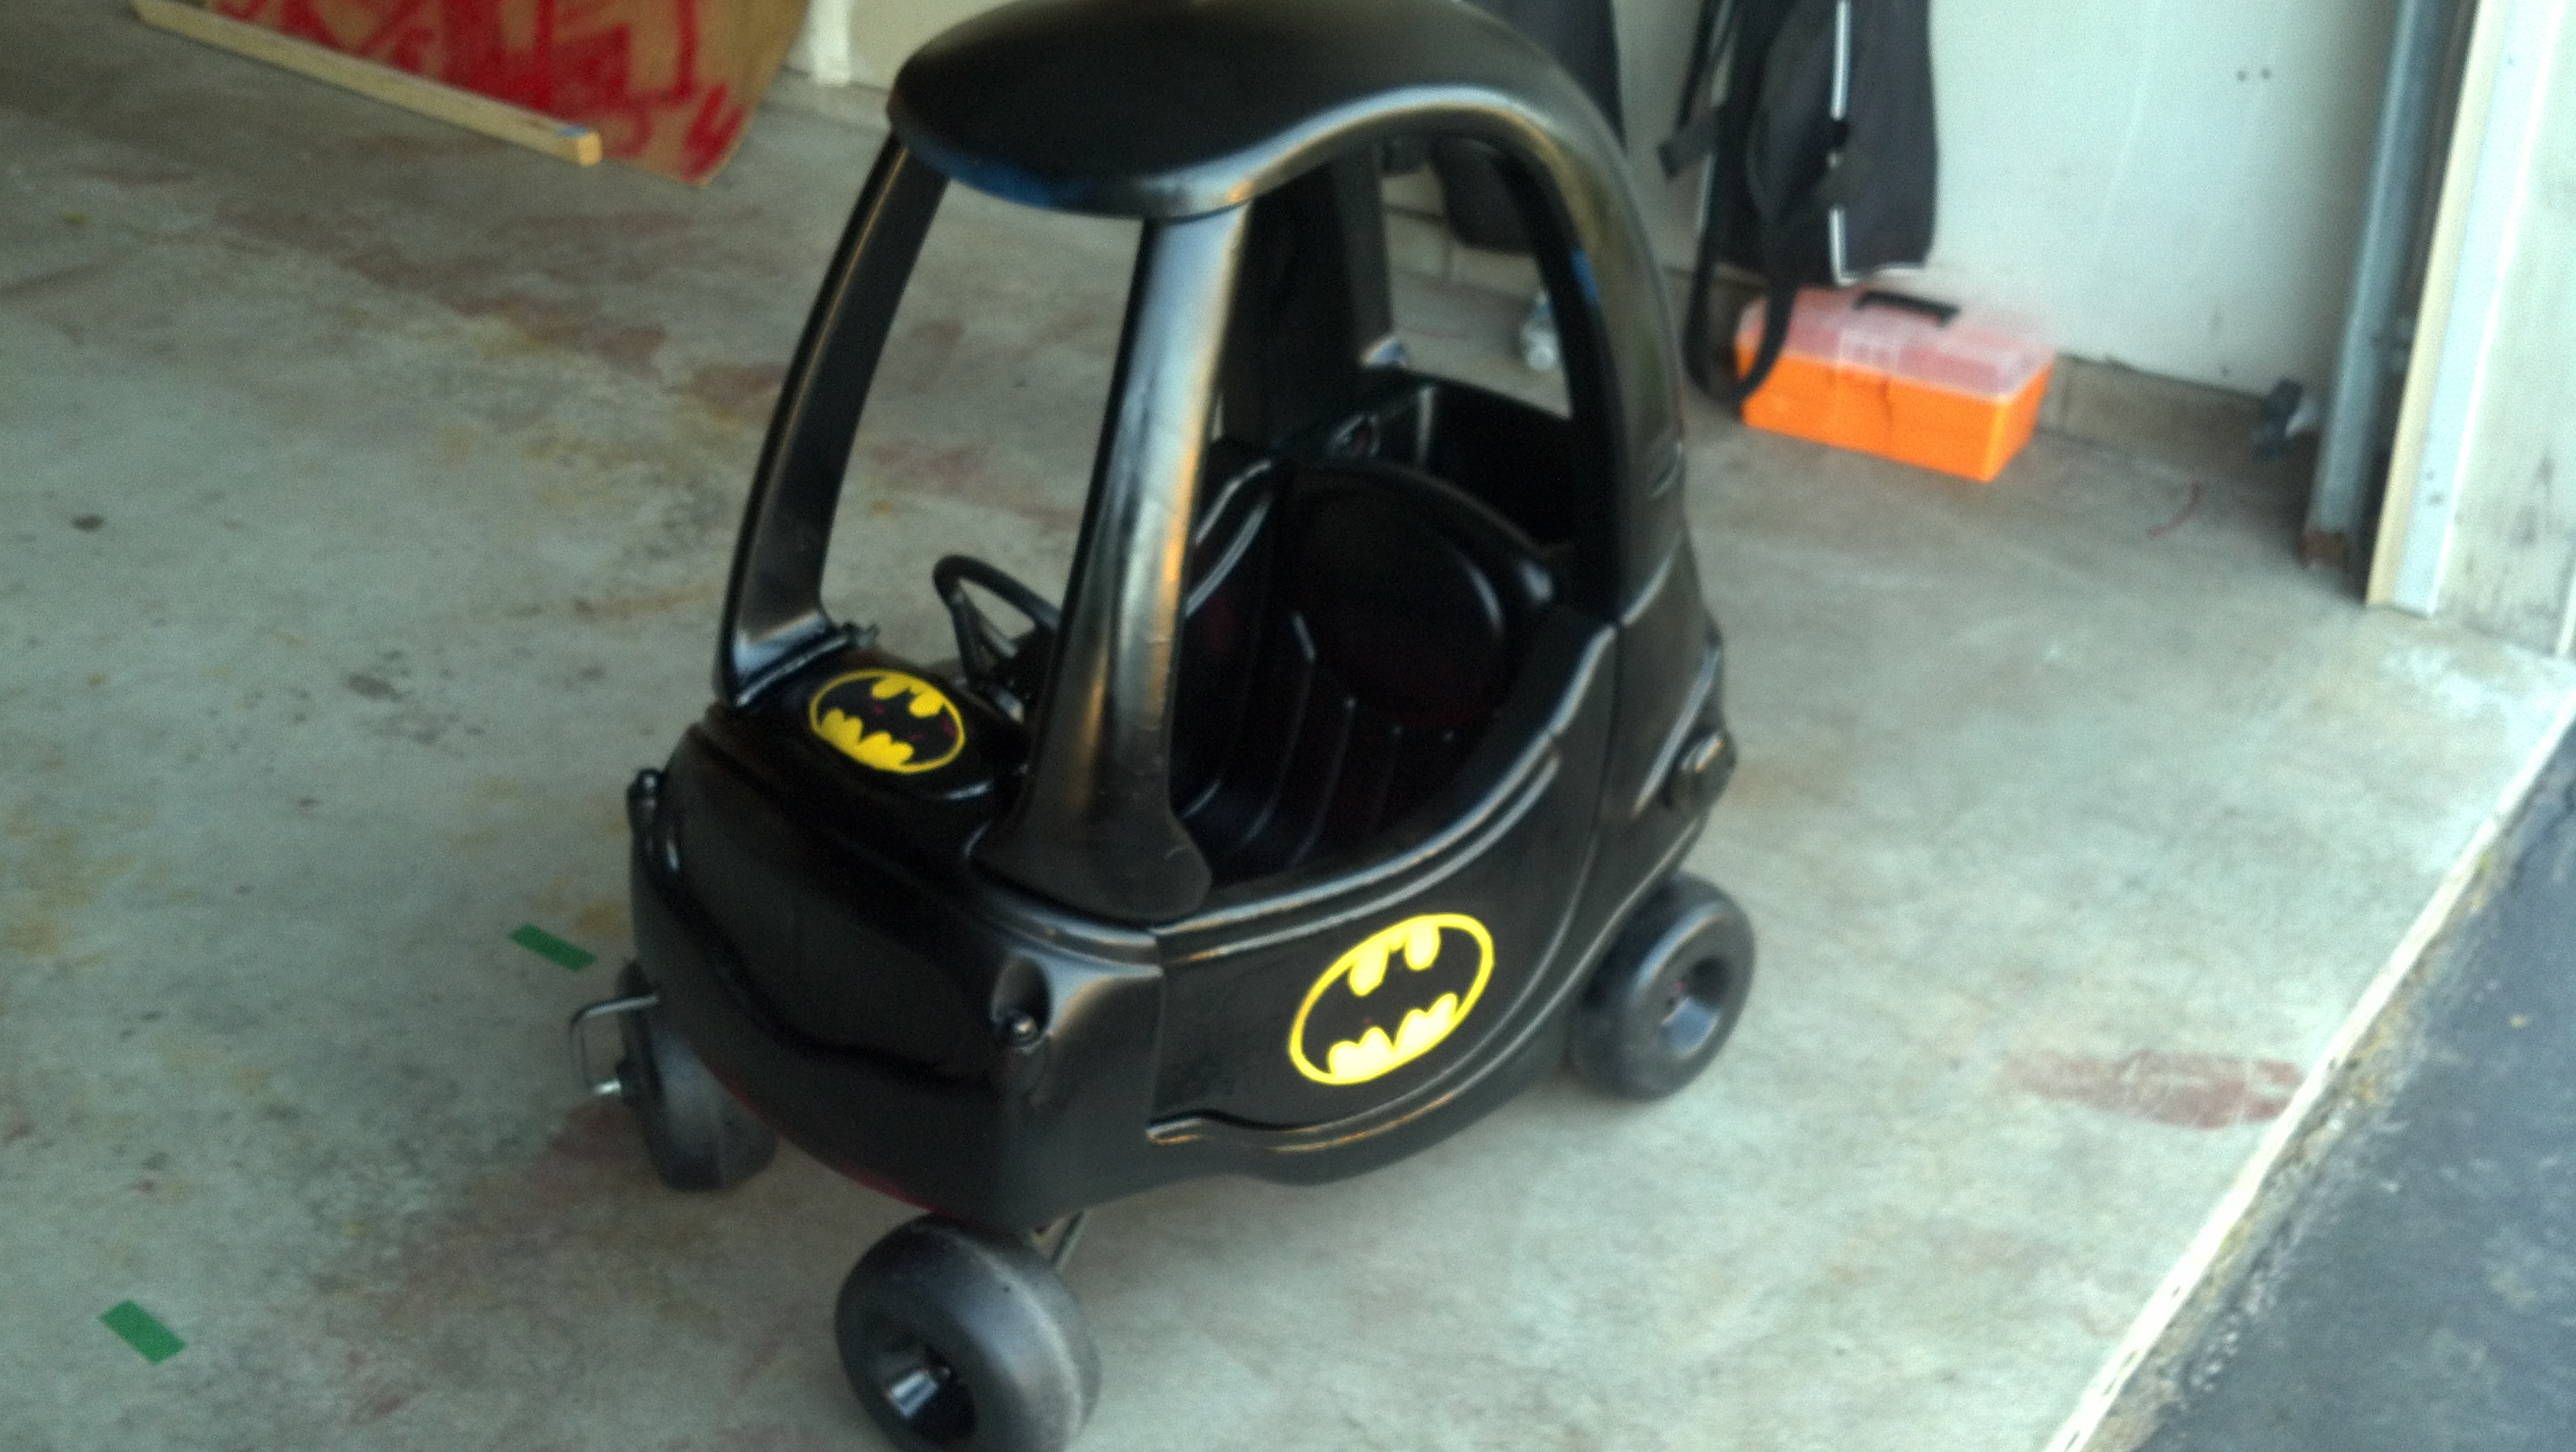 Tegenwerken Lagere school Nieuwe betekenis John Bernier on Twitter: "A little spray paint and tape, and magic, its a cozy  coupe Batman car! My 4yo will love it... http://t.co/hu2DQw6y" / Twitter